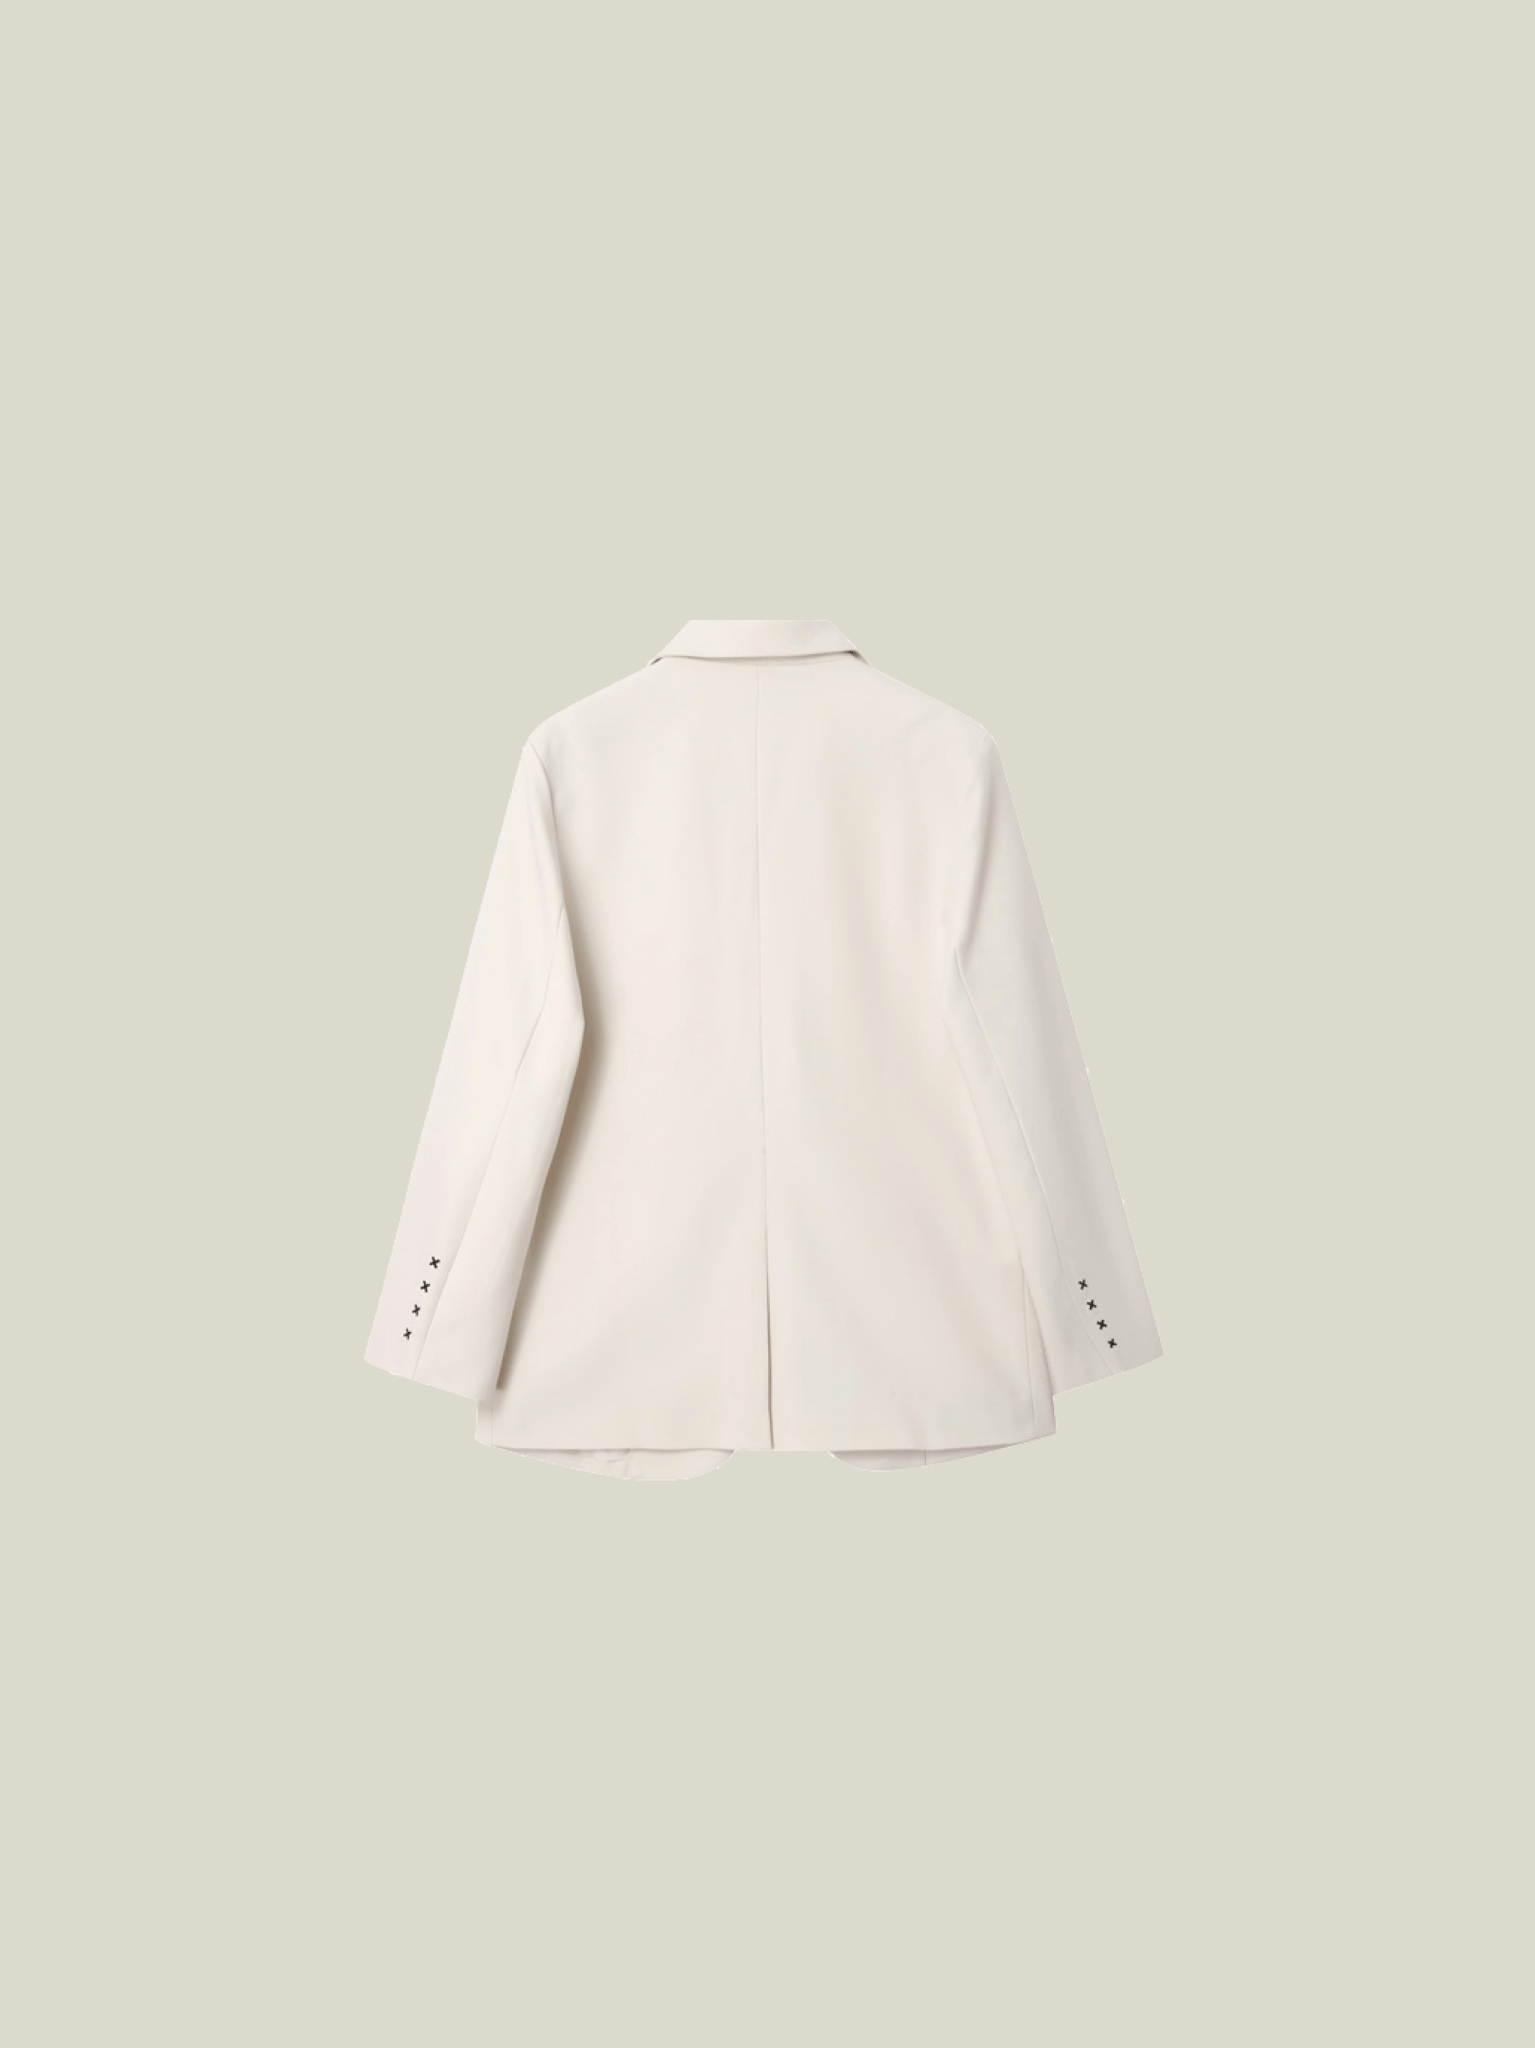 Sleeve Stitched Jacket - LOVE POMME POMME